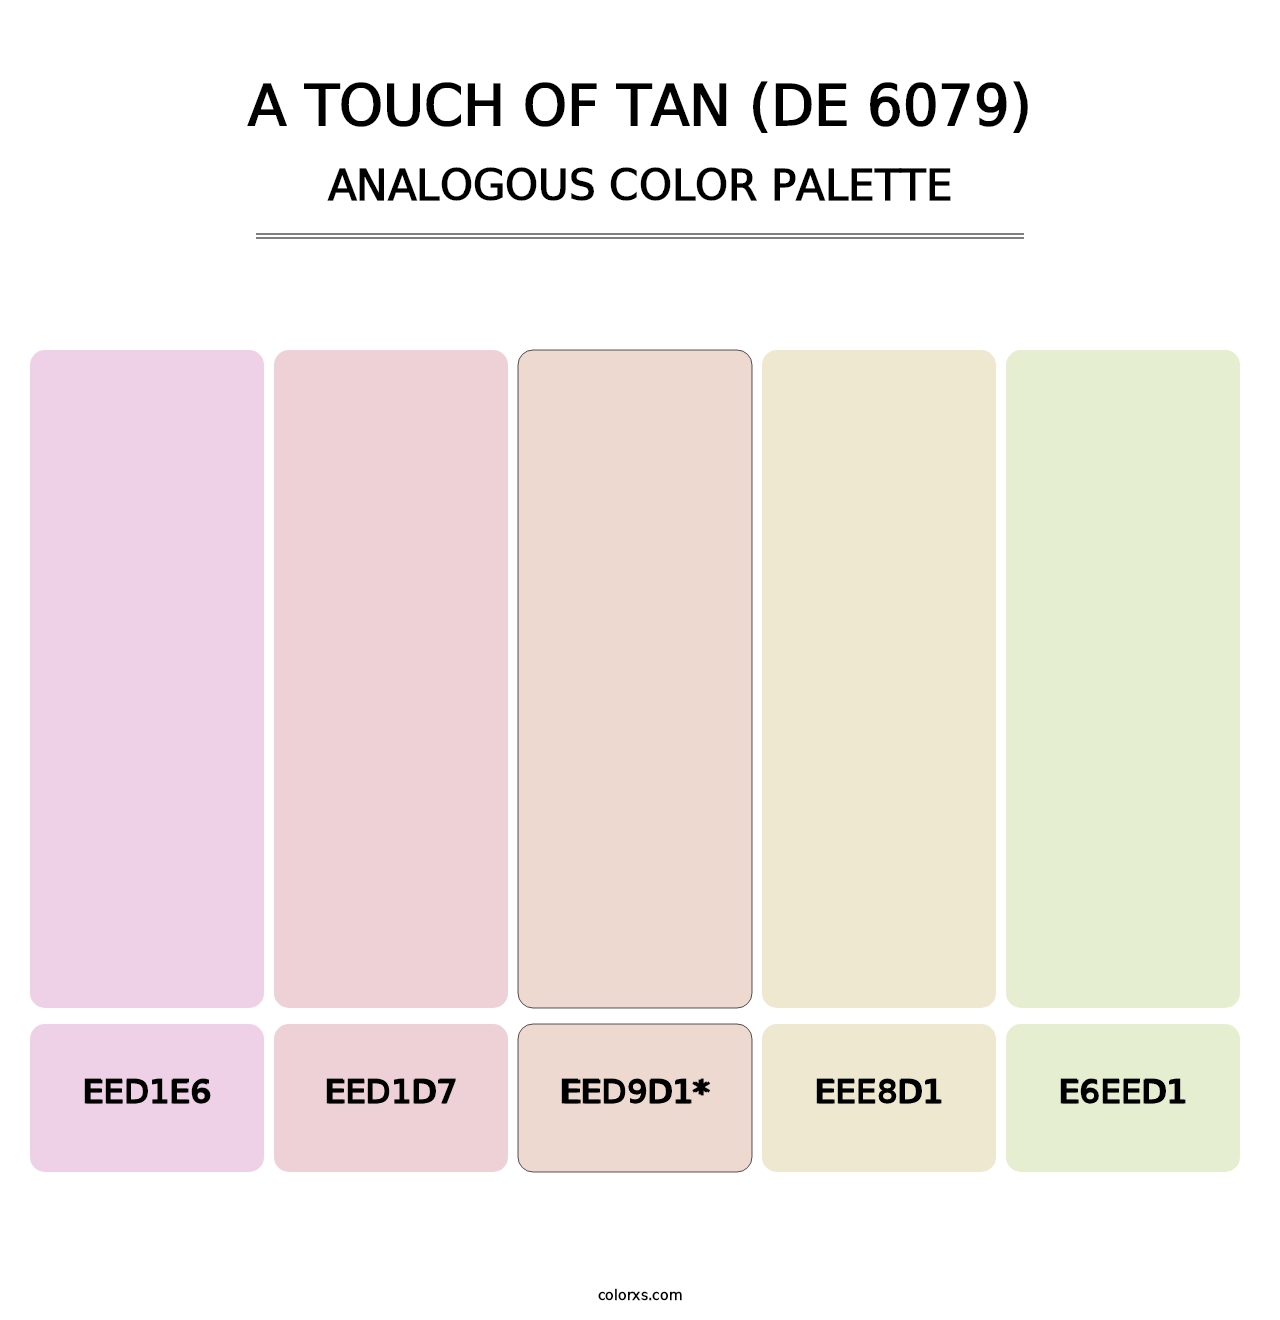 A Touch of Tan (DE 6079) - Analogous Color Palette